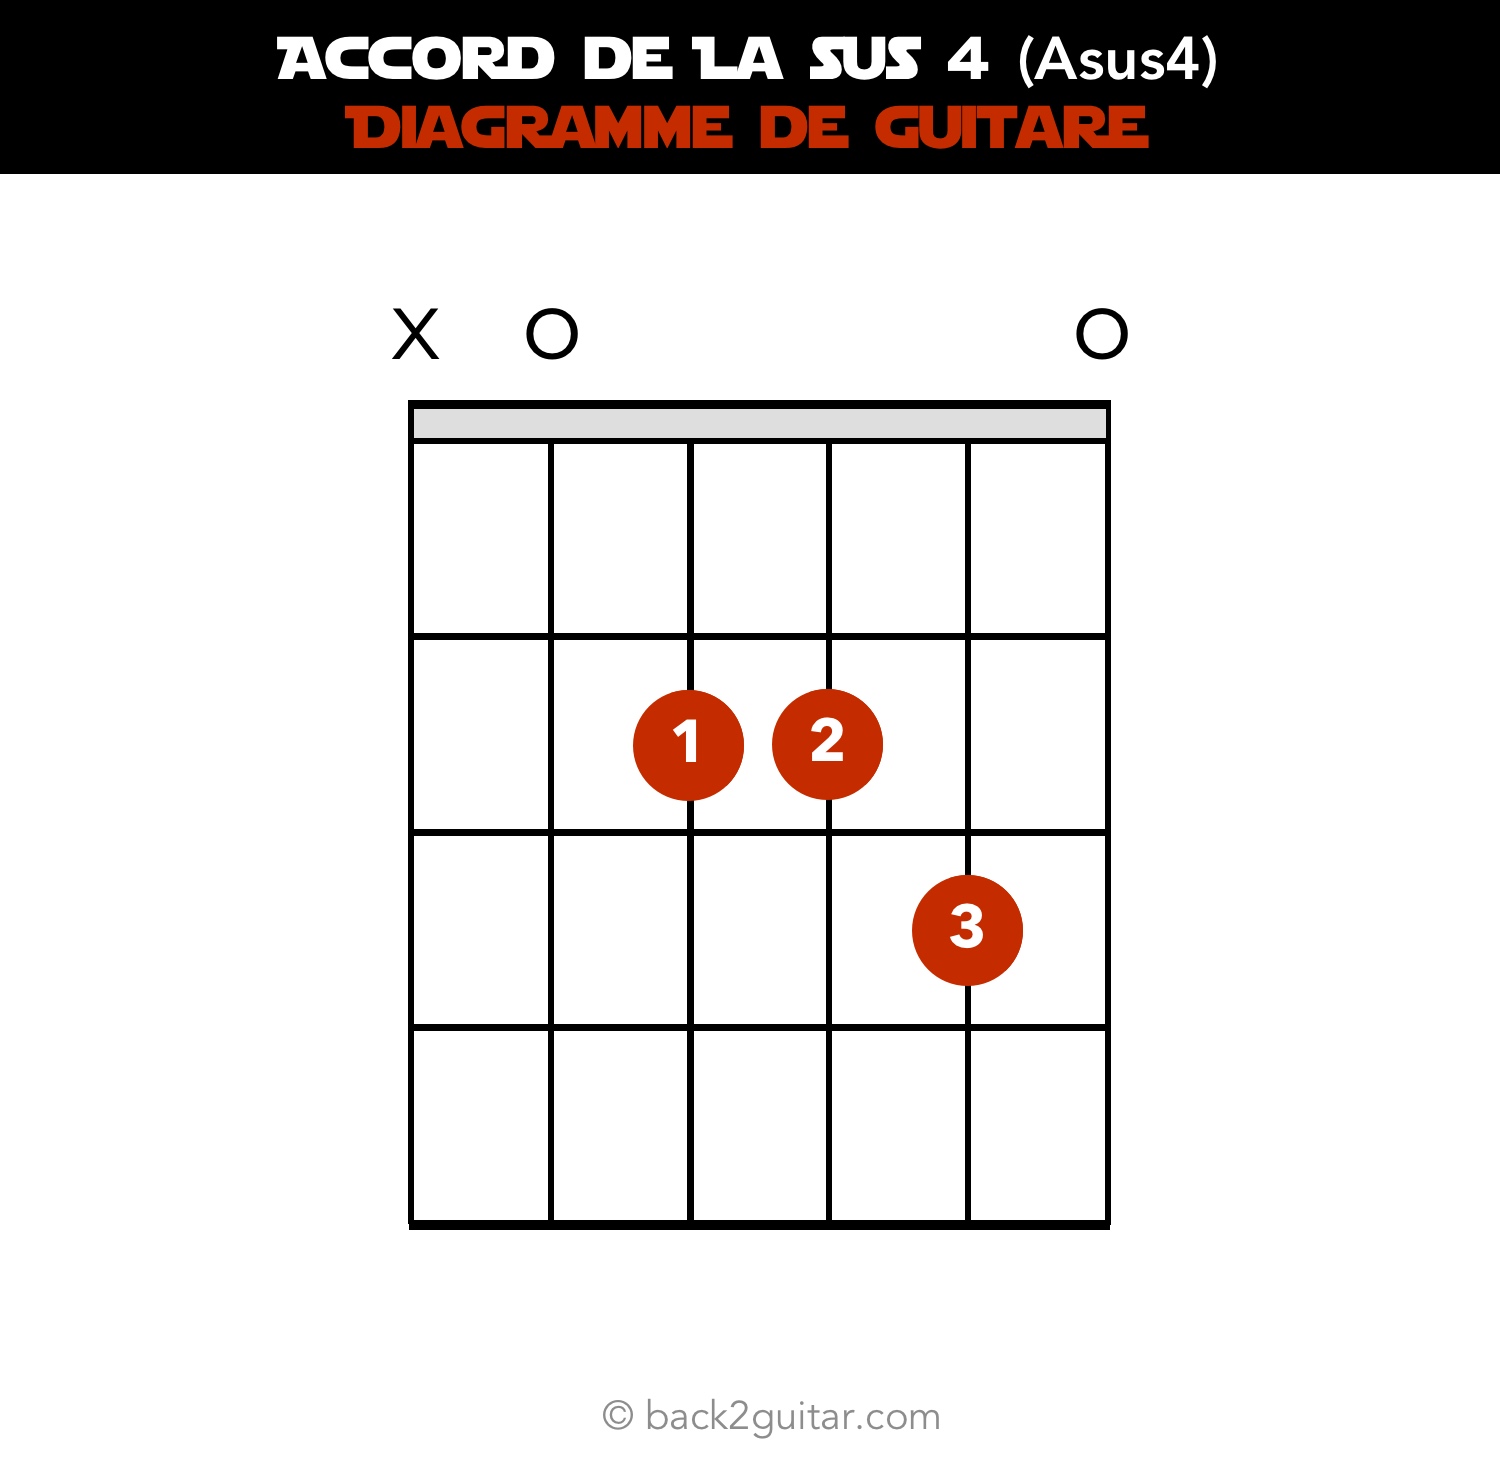 accord guitare la sus4 diagramme guitare (Asus4)